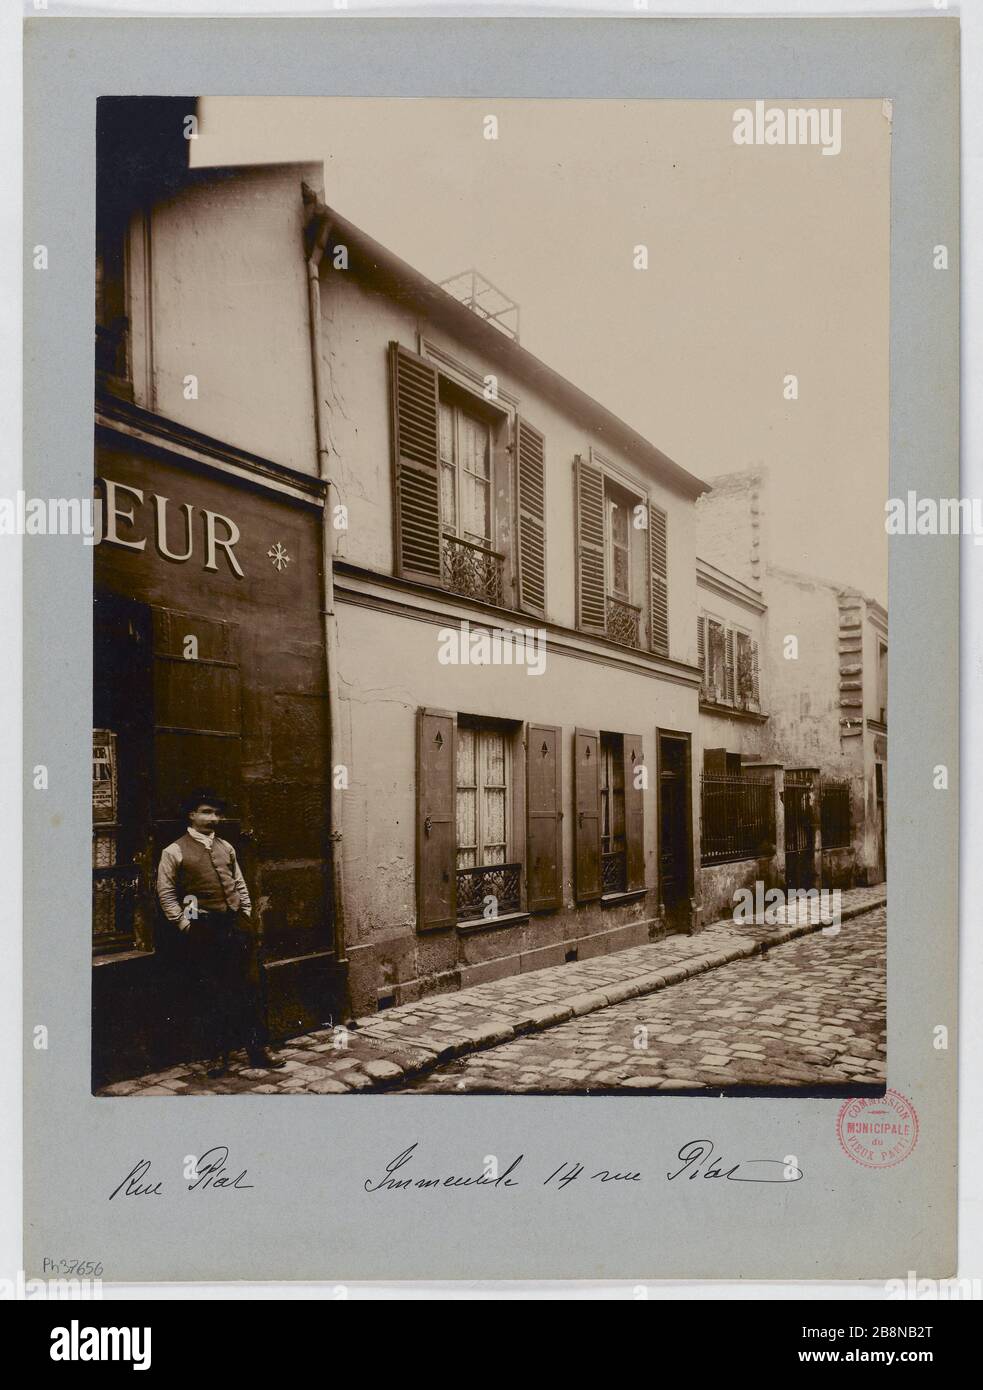 Gebäude, 14 rue Piat, Paris (20. Arr.) Immeuble, 14 rue Piat, Paris (XXème arr.). 1897-1898. Union Photographique Française. Paris, musée Carnavalet. Stockfoto